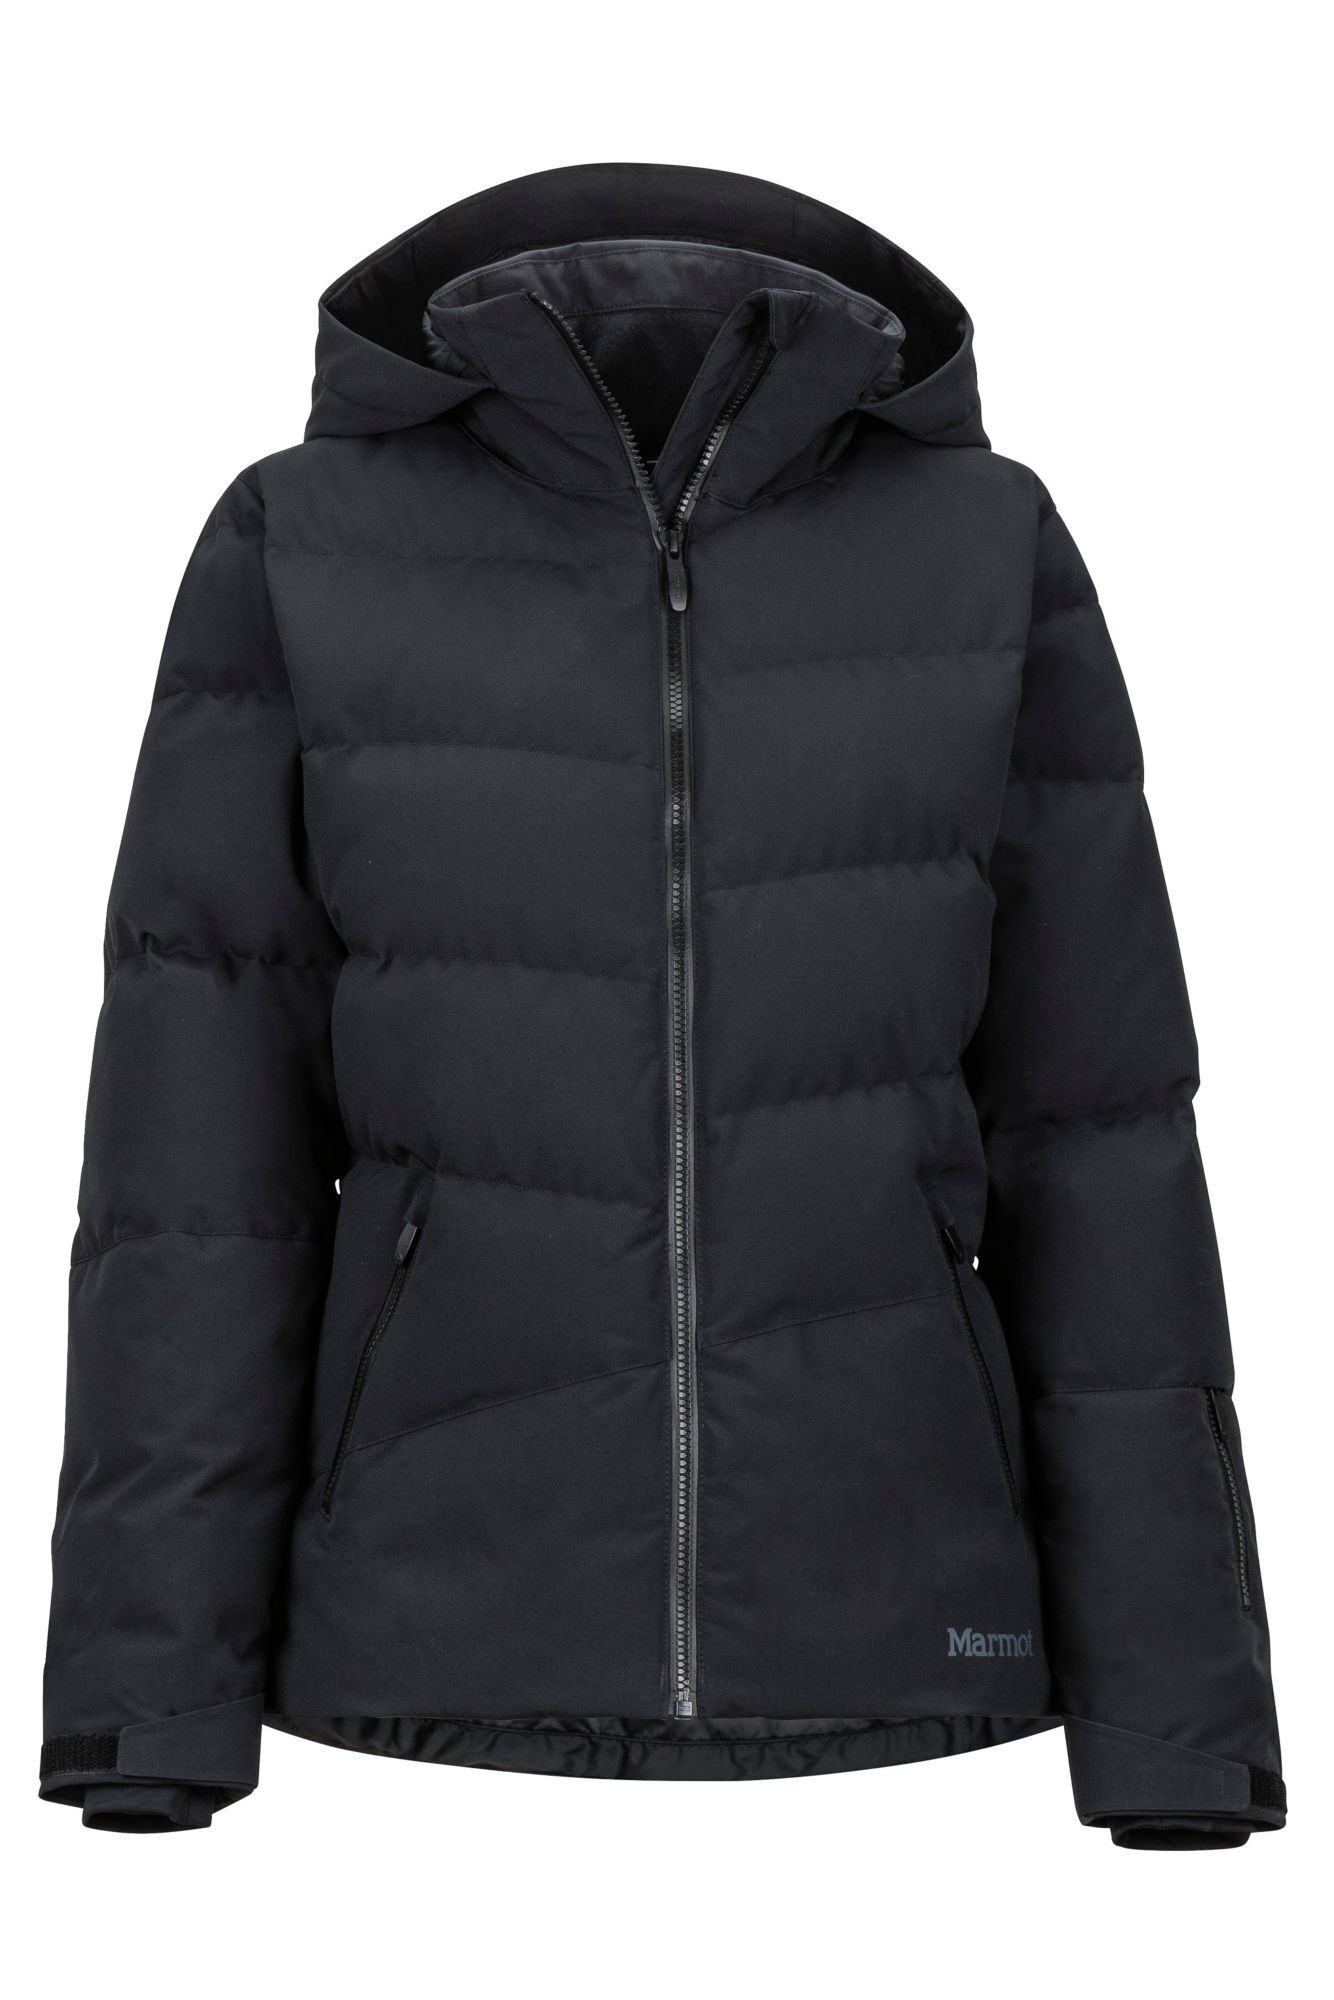 Marmot Slingshot Jacket - Ski jacket - Women's